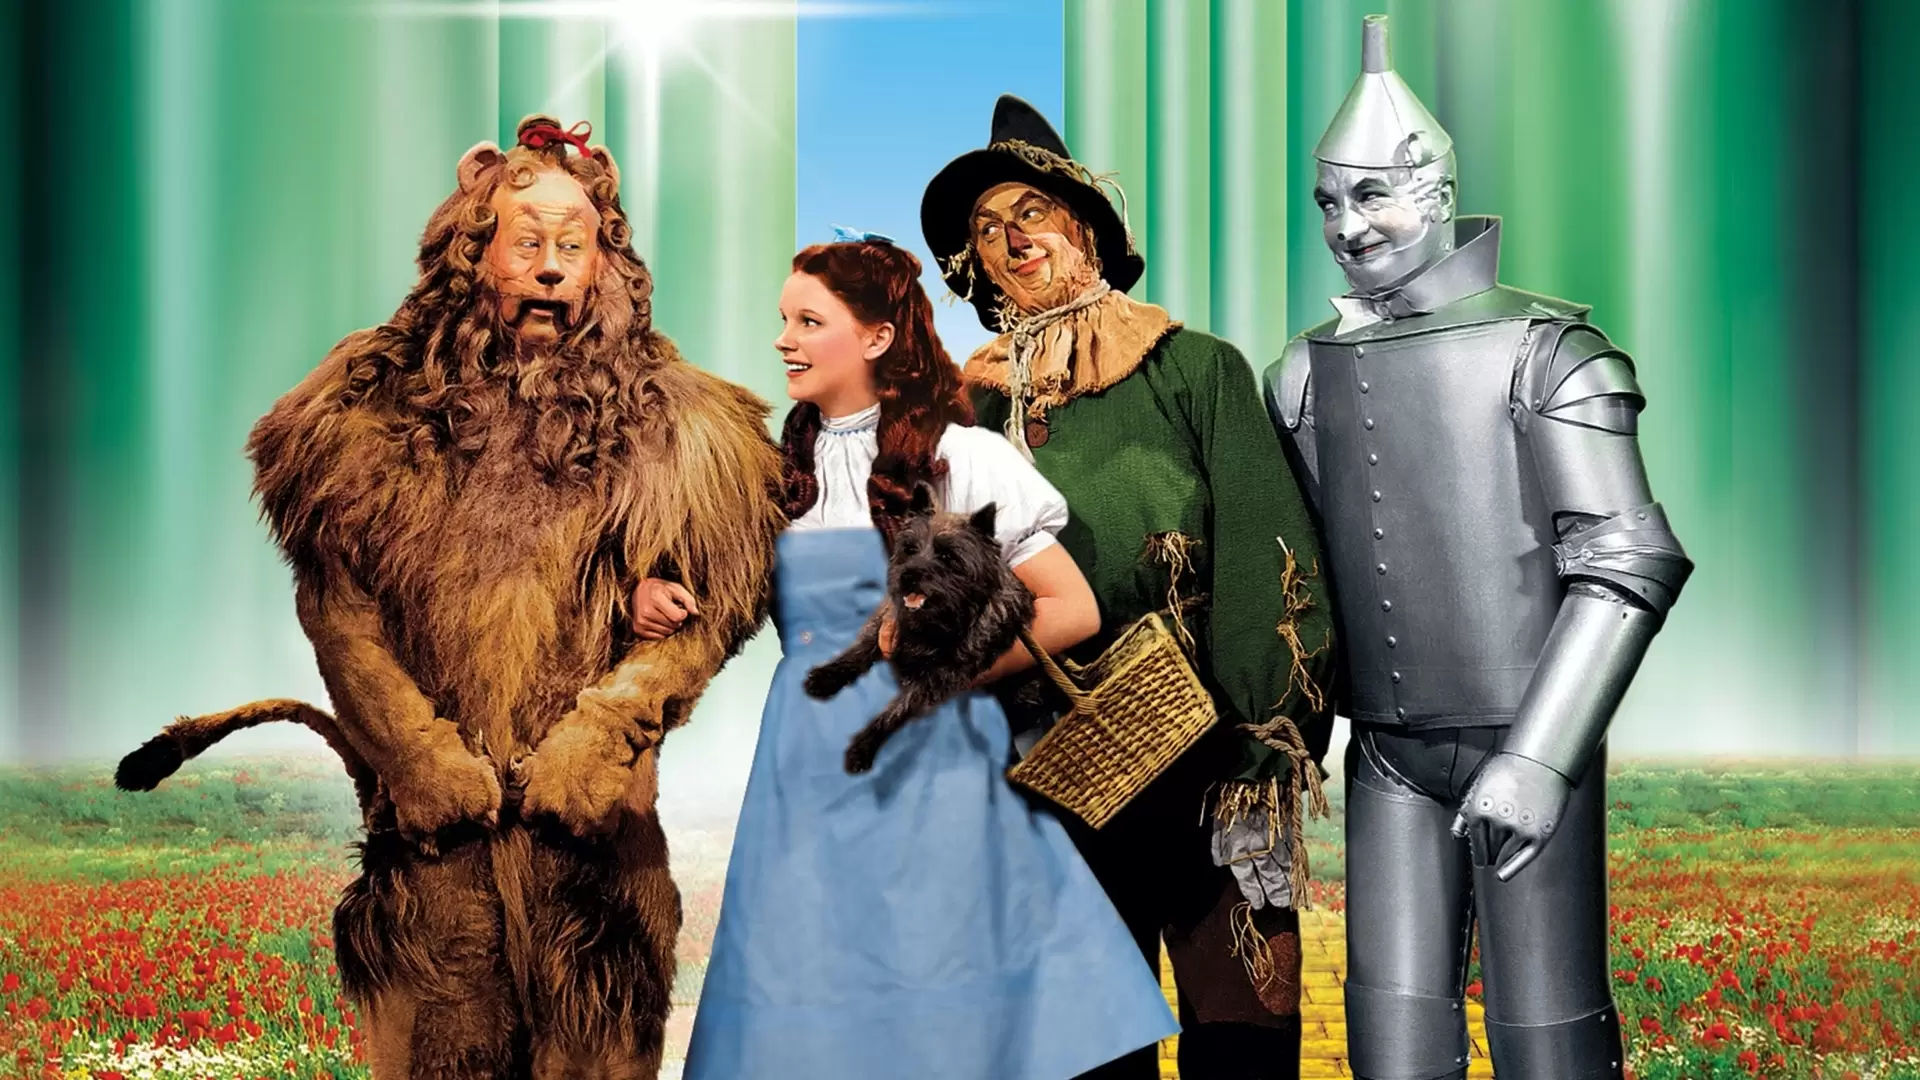 دانلود فیلم The Wizard of Oz 1939 (جادوگر شهر از) با زیرنویس فارسی و تماشای آنلاین